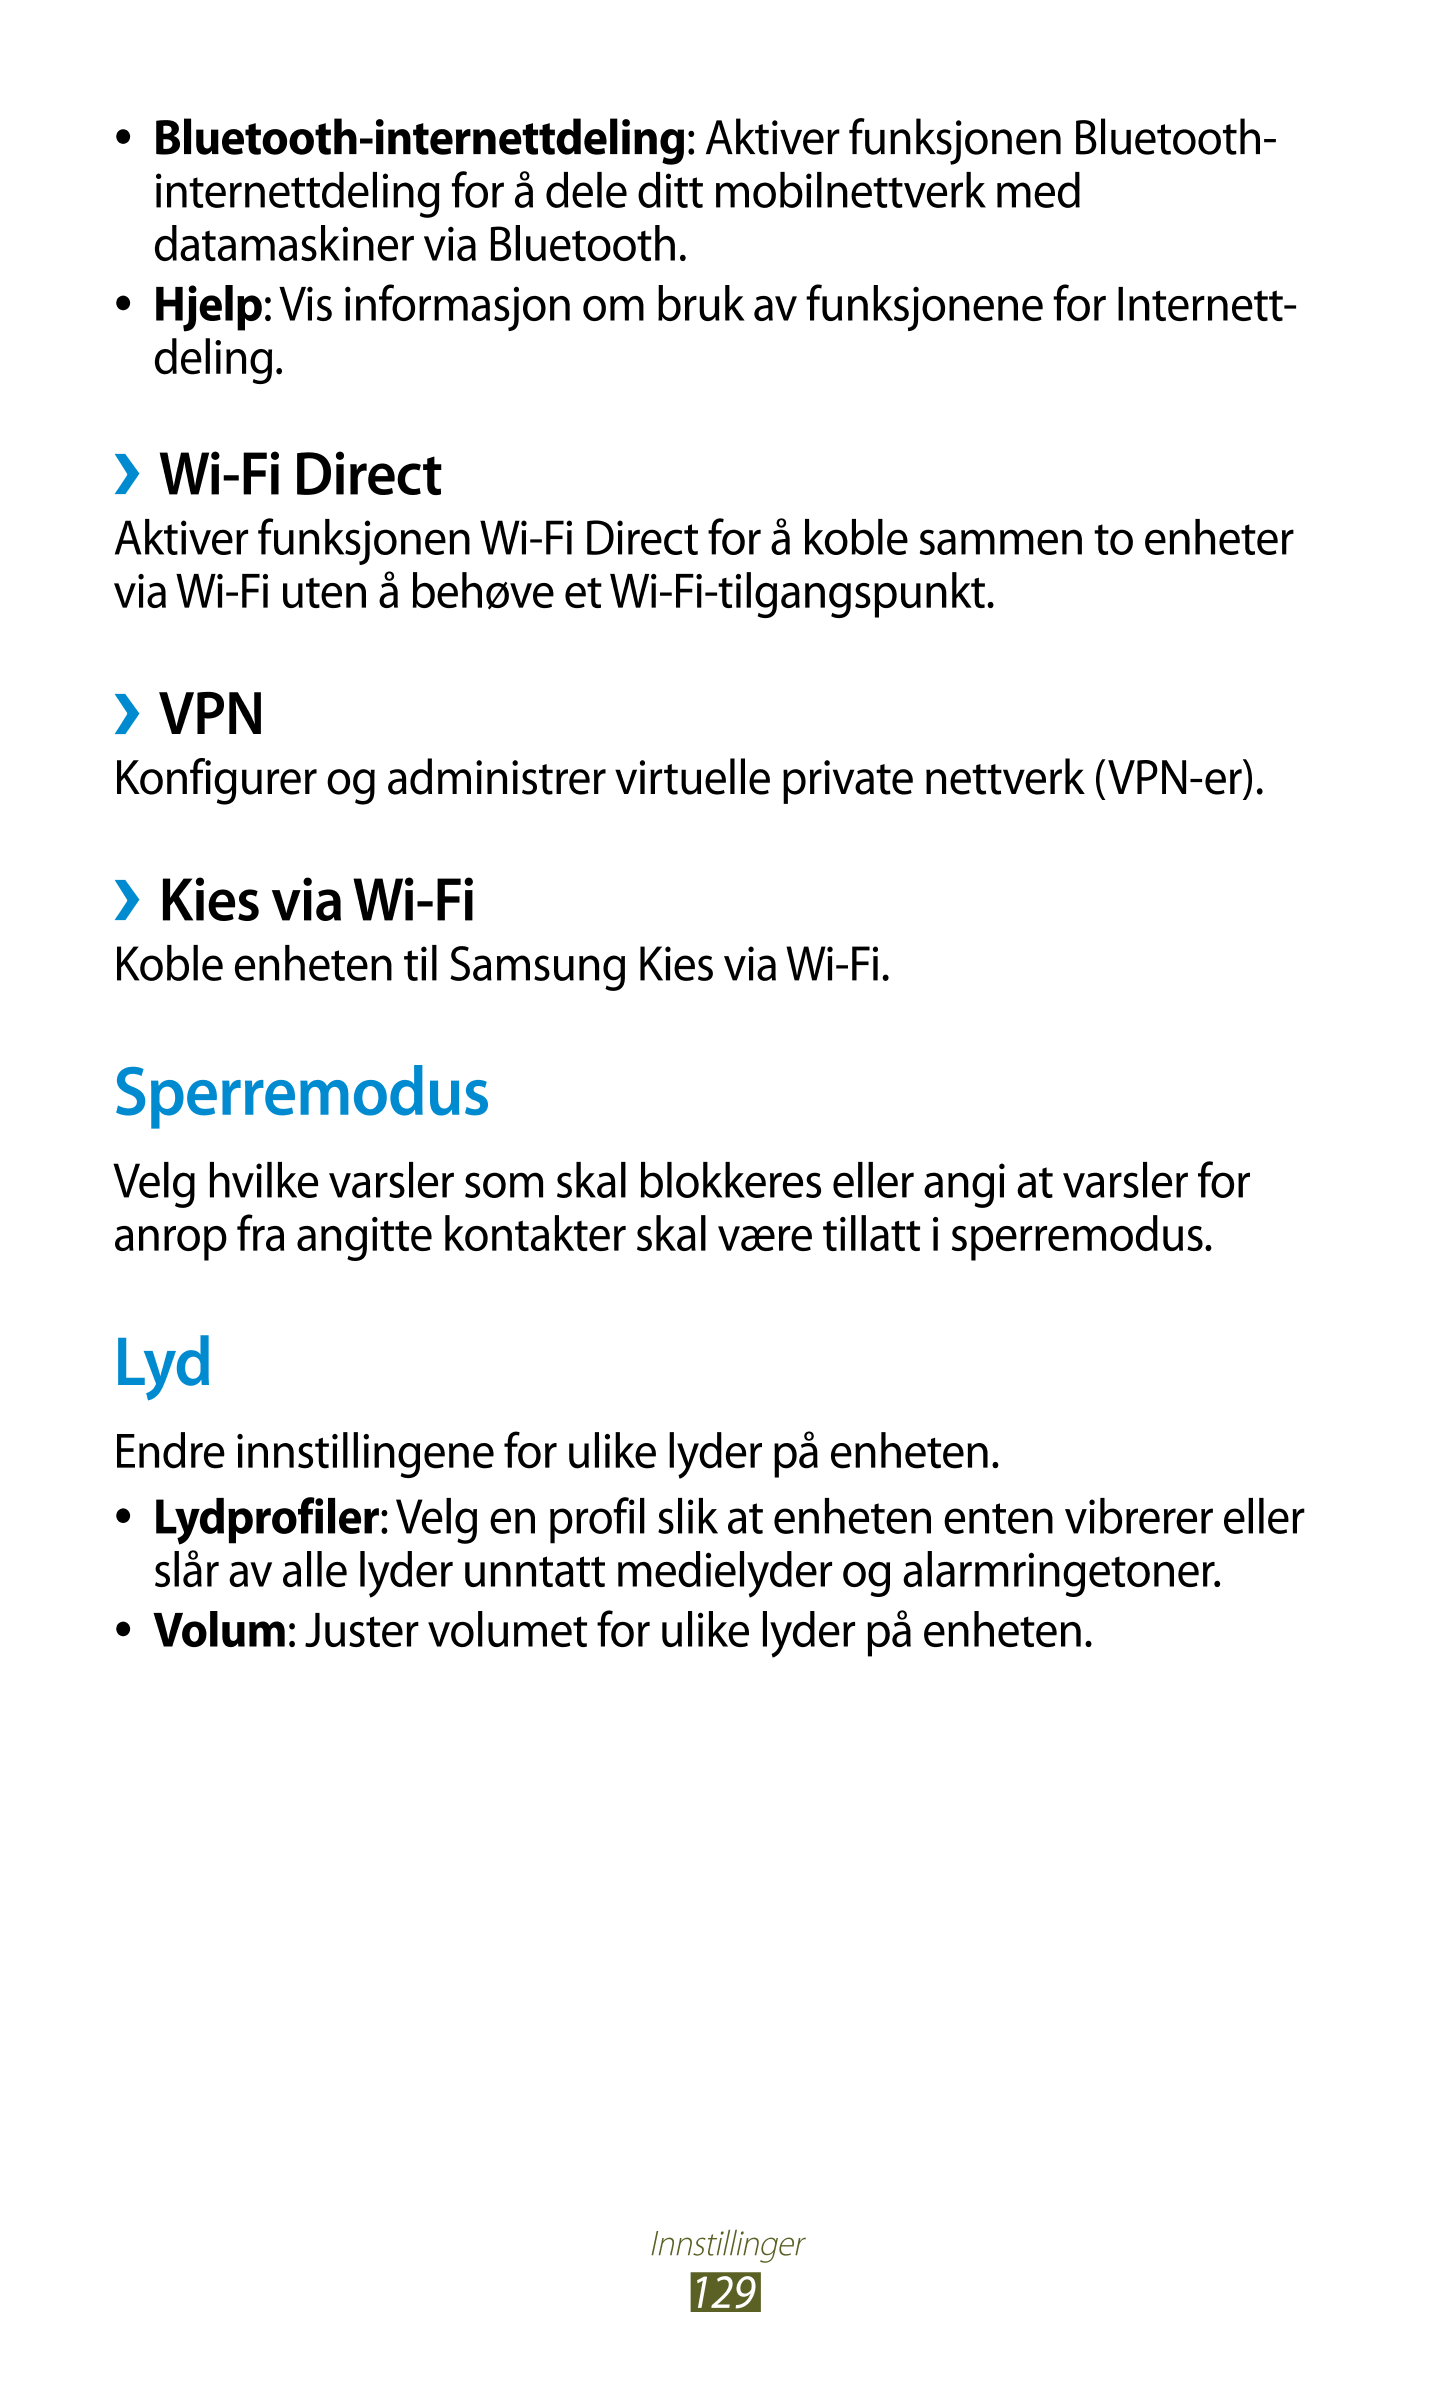 ● Bluetooth-internettdeling: Aktiver funksjonen Bluetooth-
internettdeling for å dele ditt mobilnettverk med 
  datamaskiner via